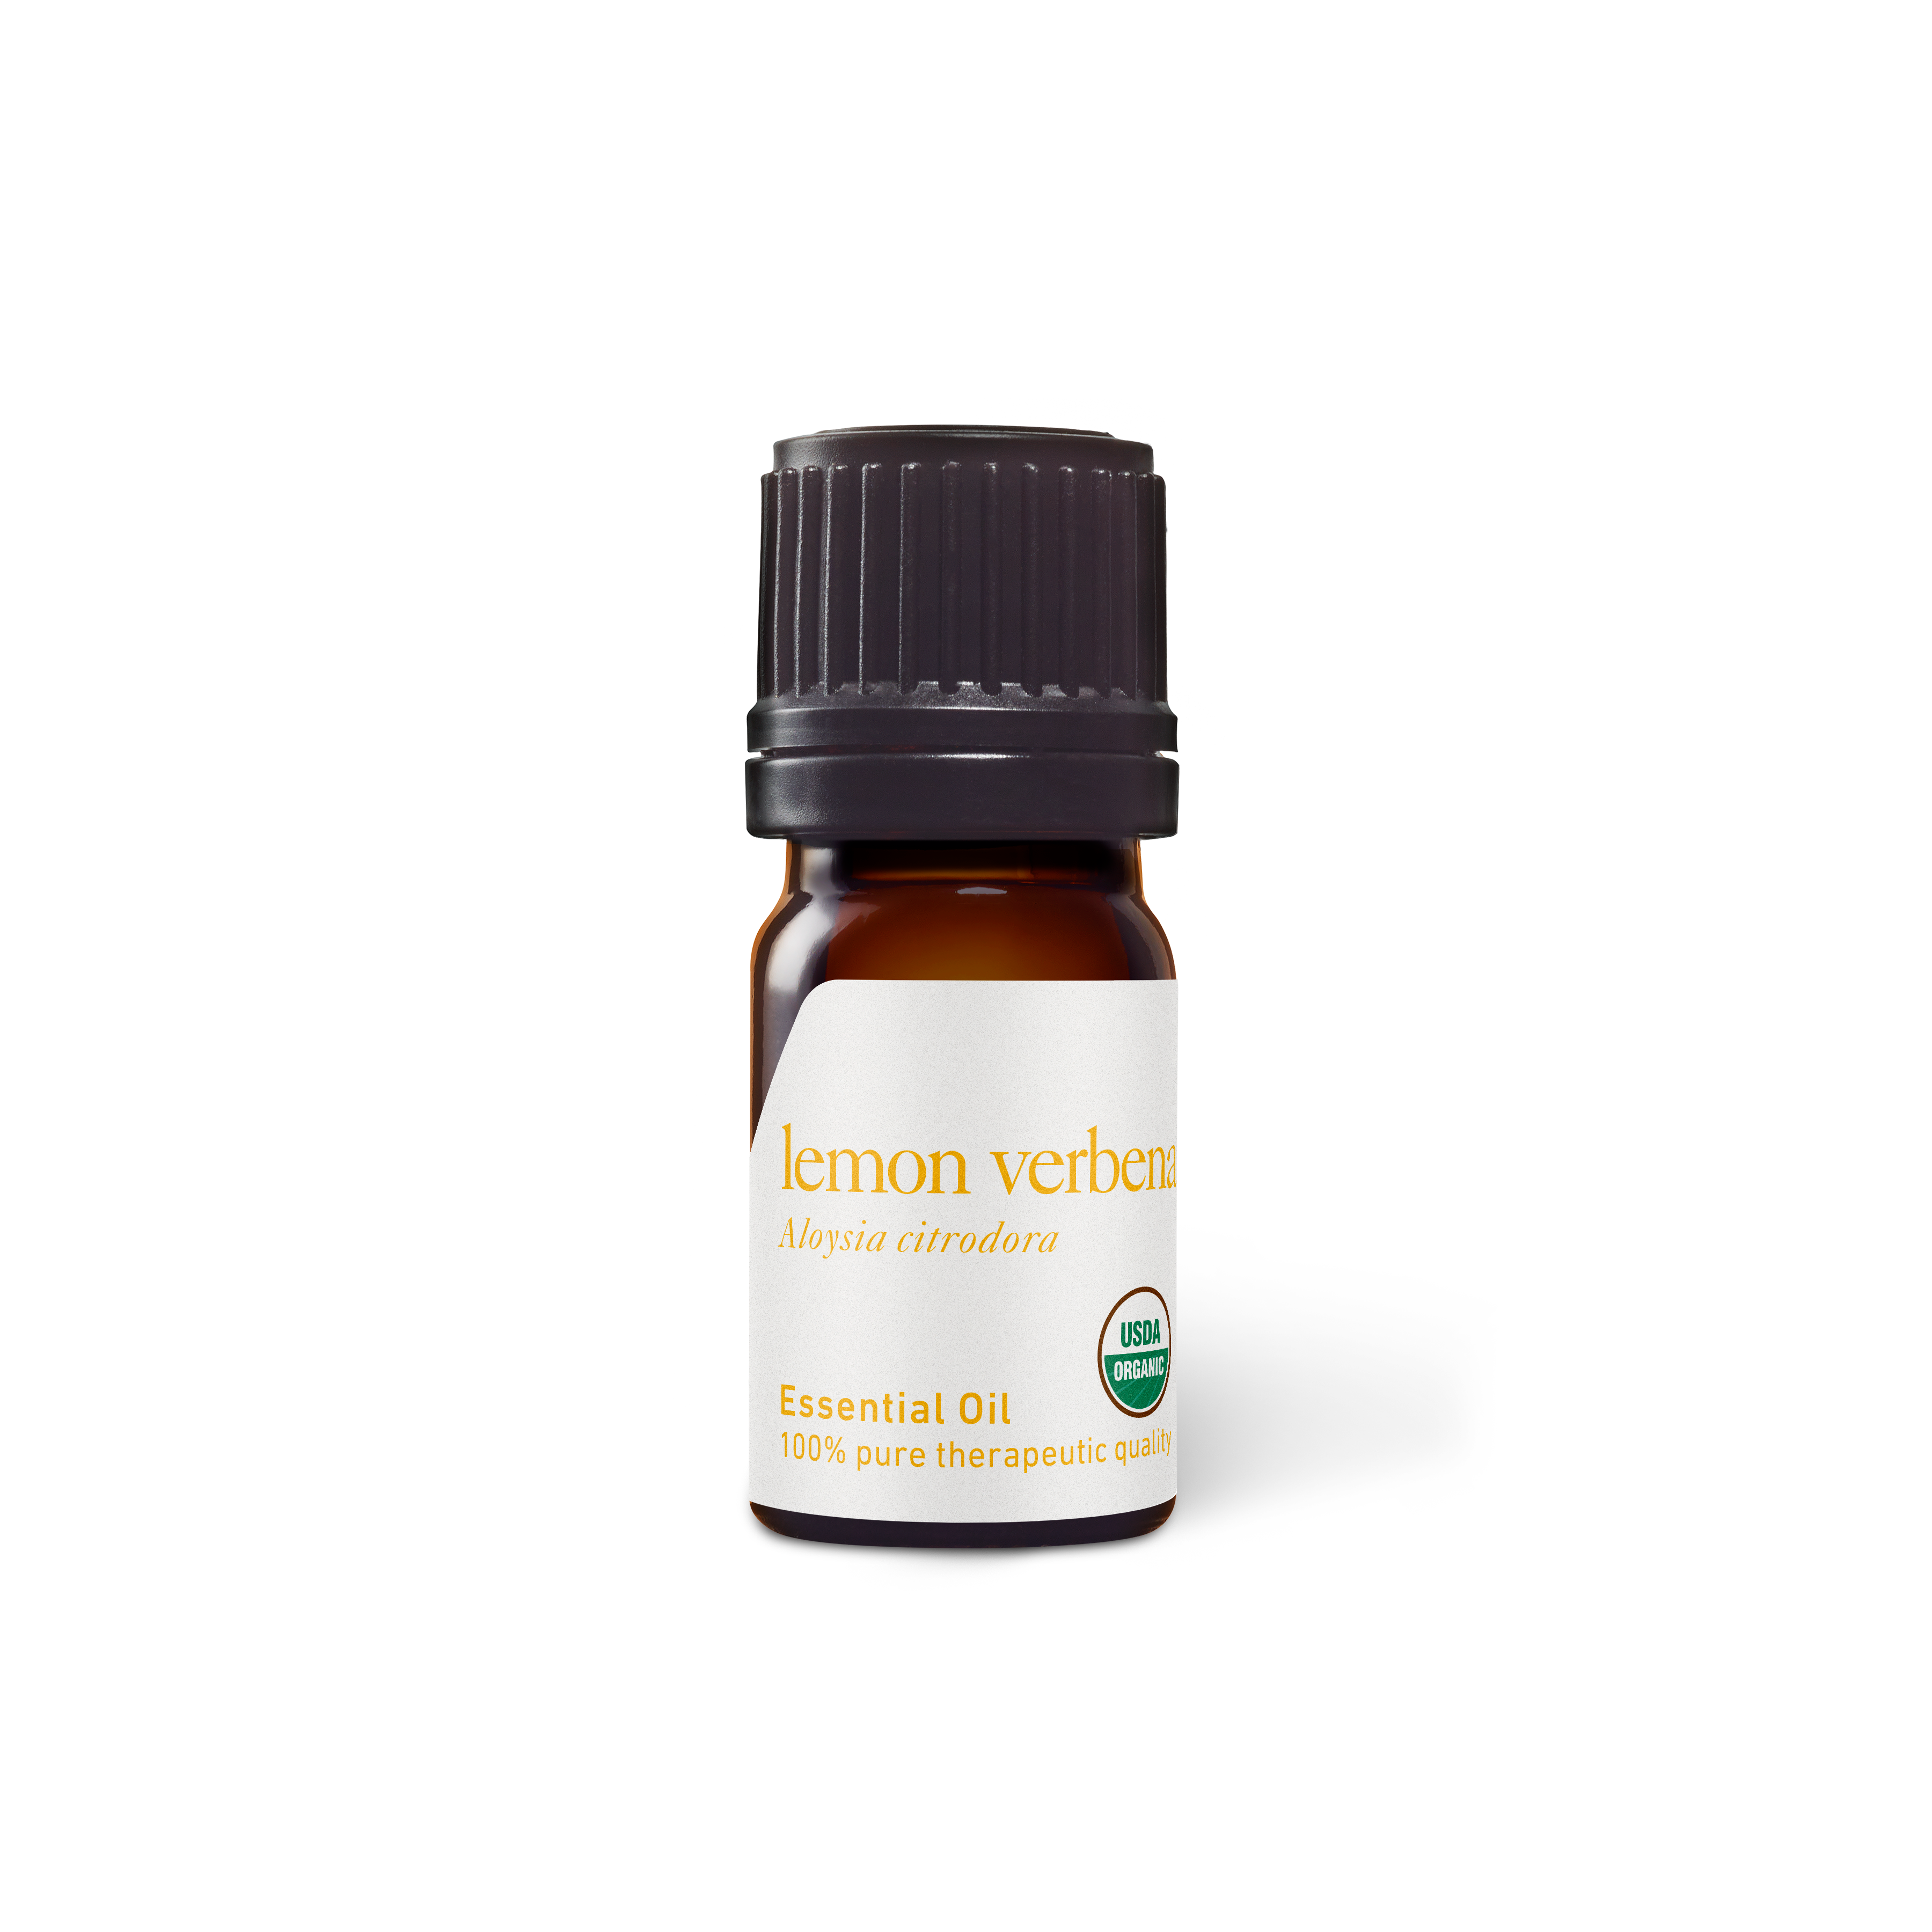 Bottle of lemon verbena essential oil (Aloysia triphylla Stock